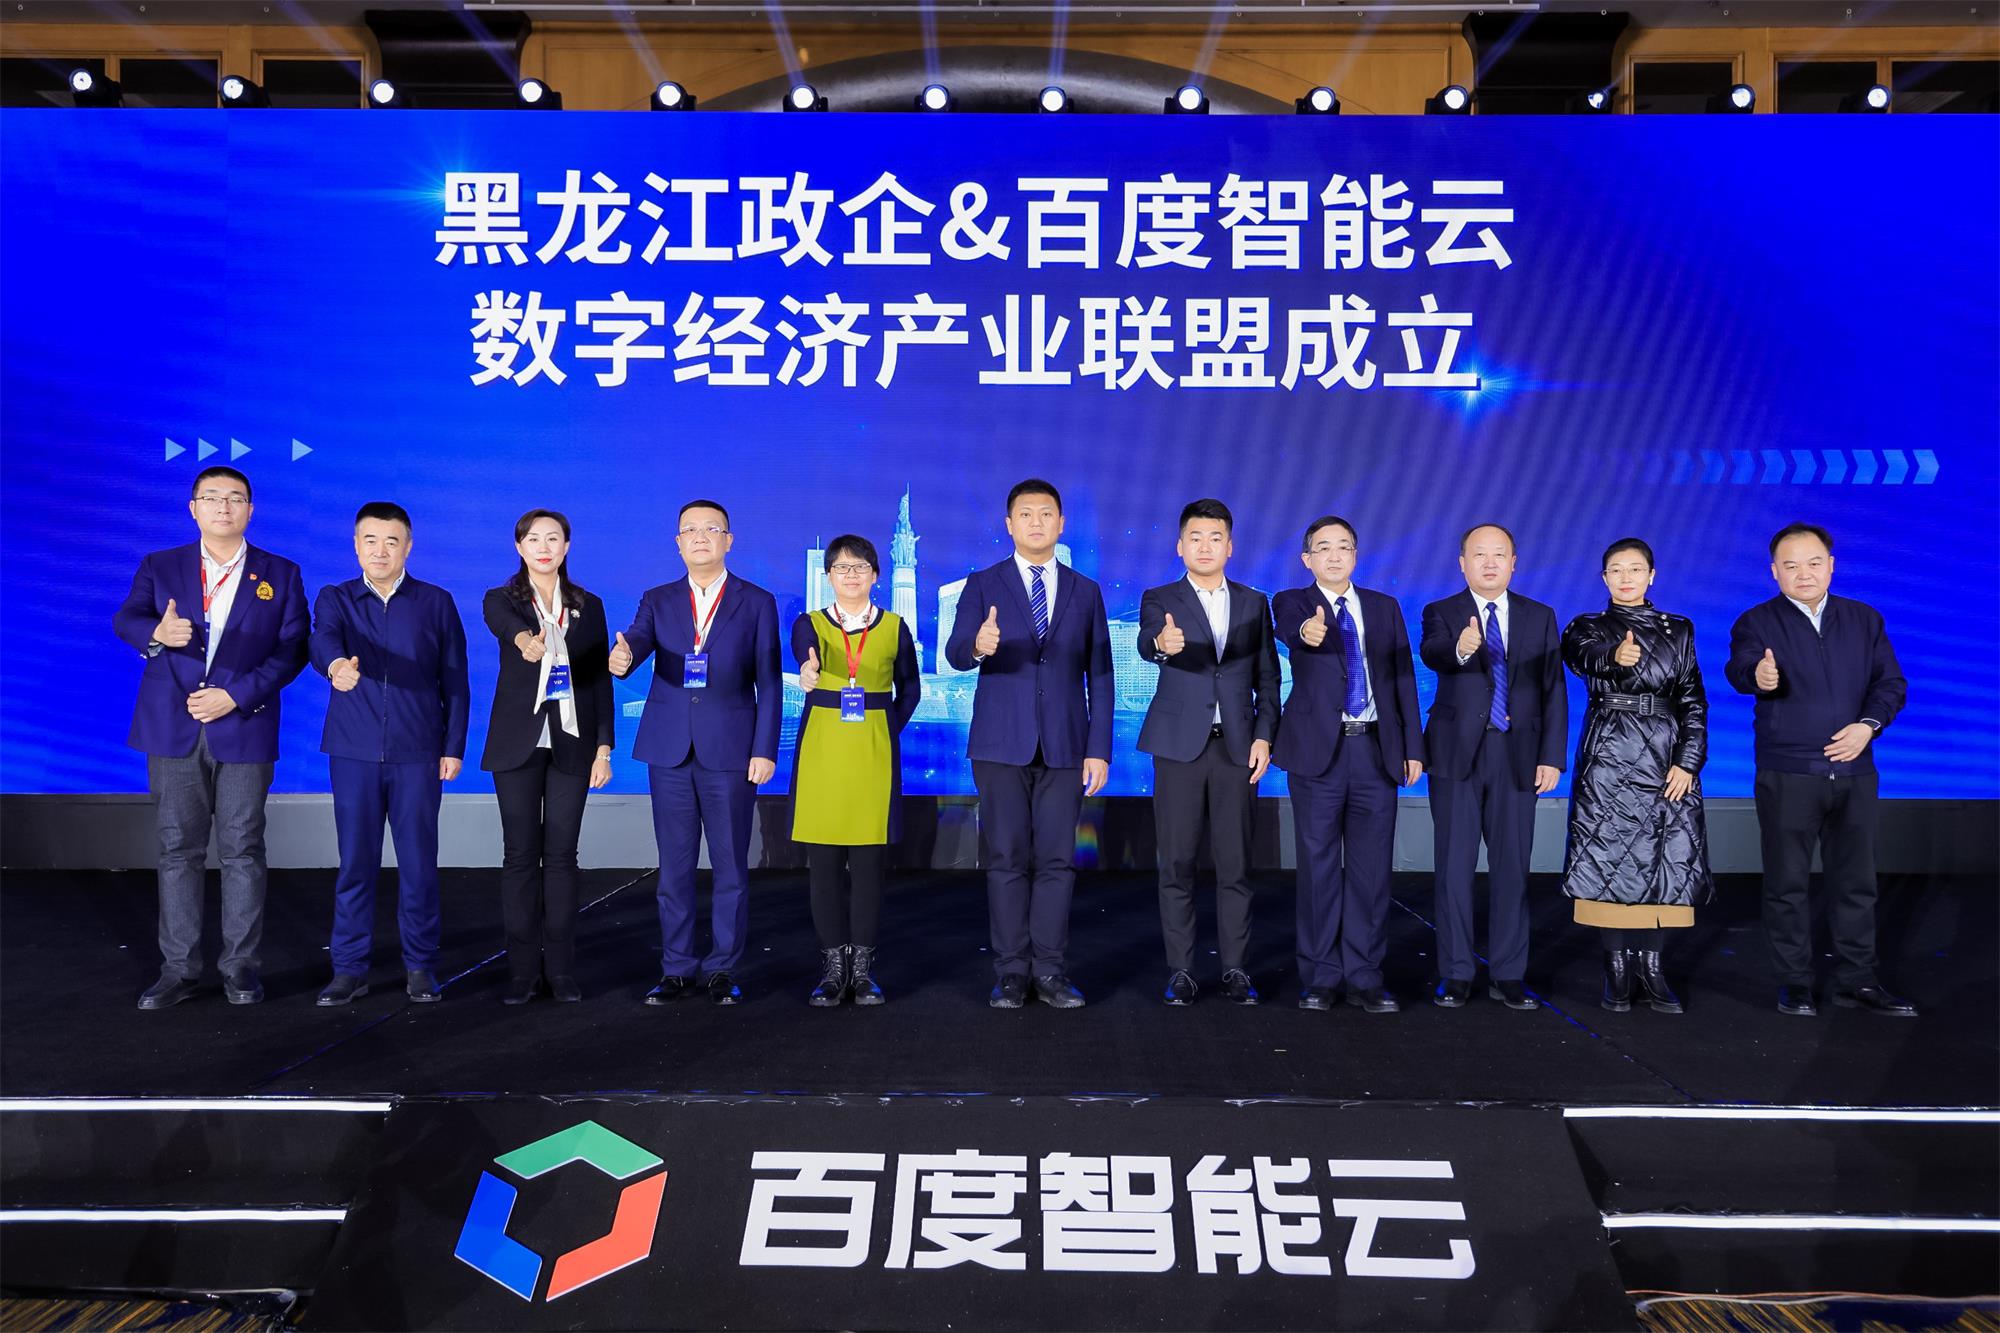 黑龍江政企與百度智能雲成立「數字經濟產業聯盟」